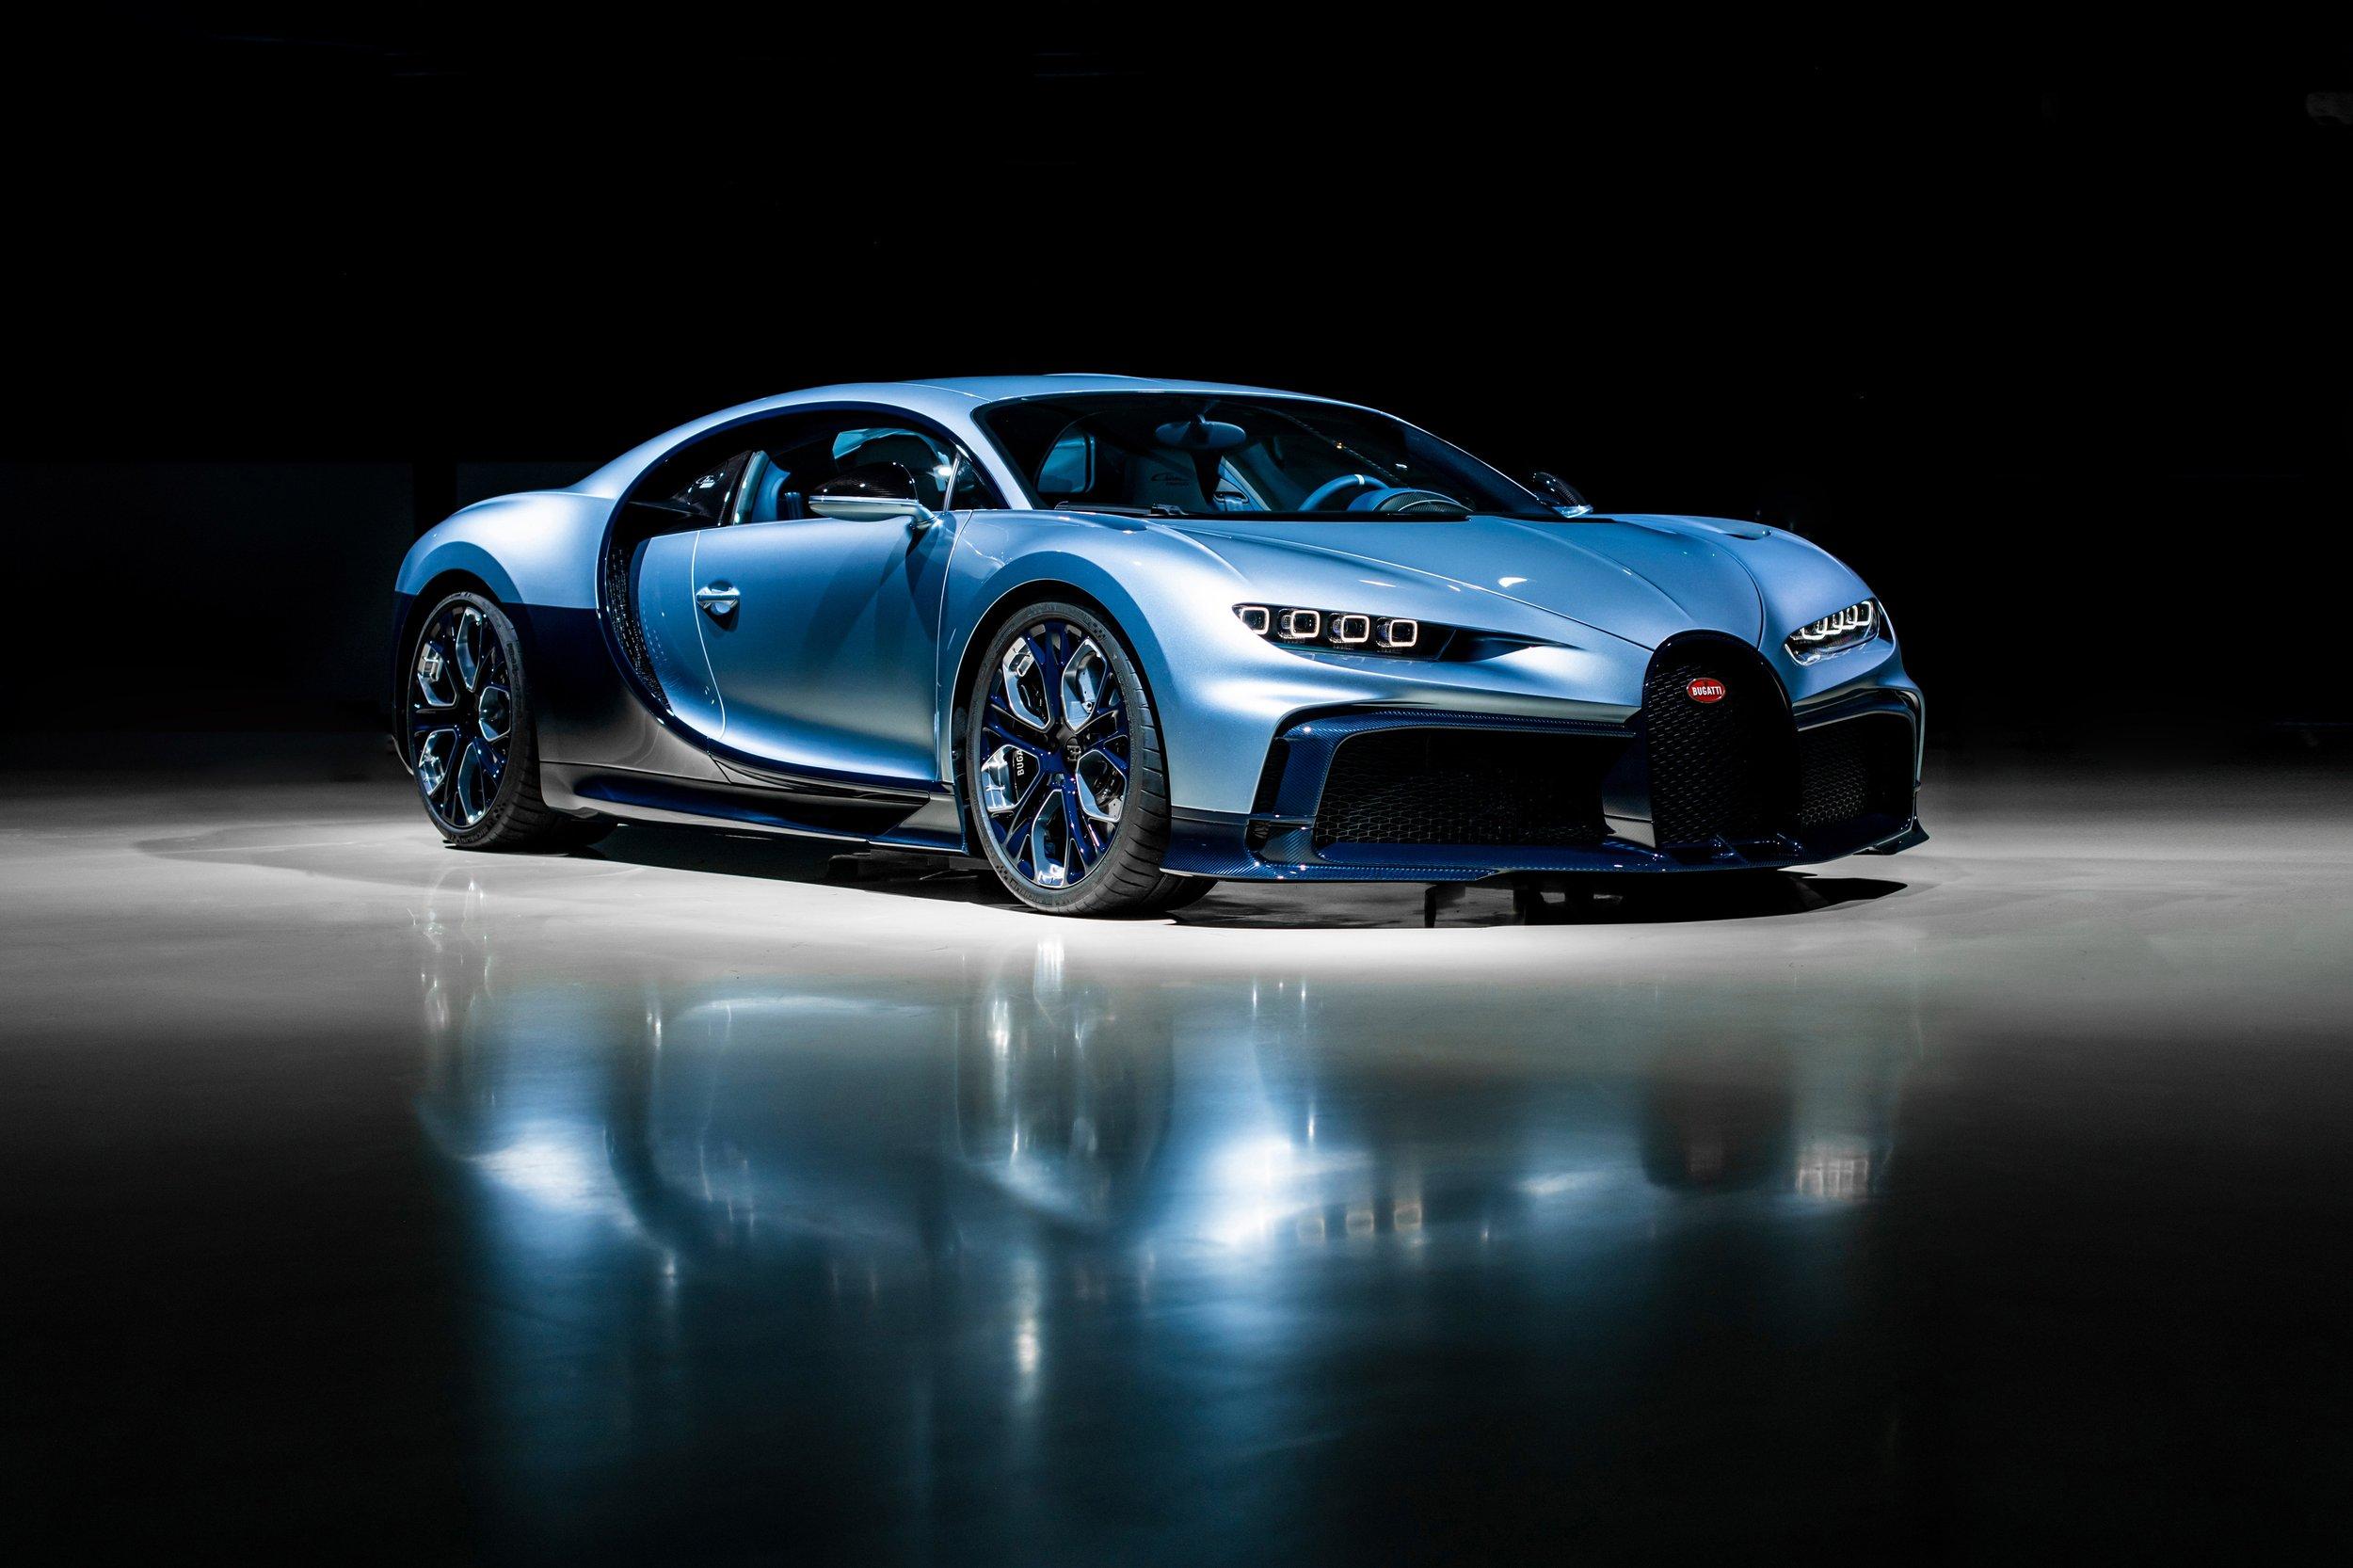 News The Bugatti Chiron Profil E An Automotive Solitaire